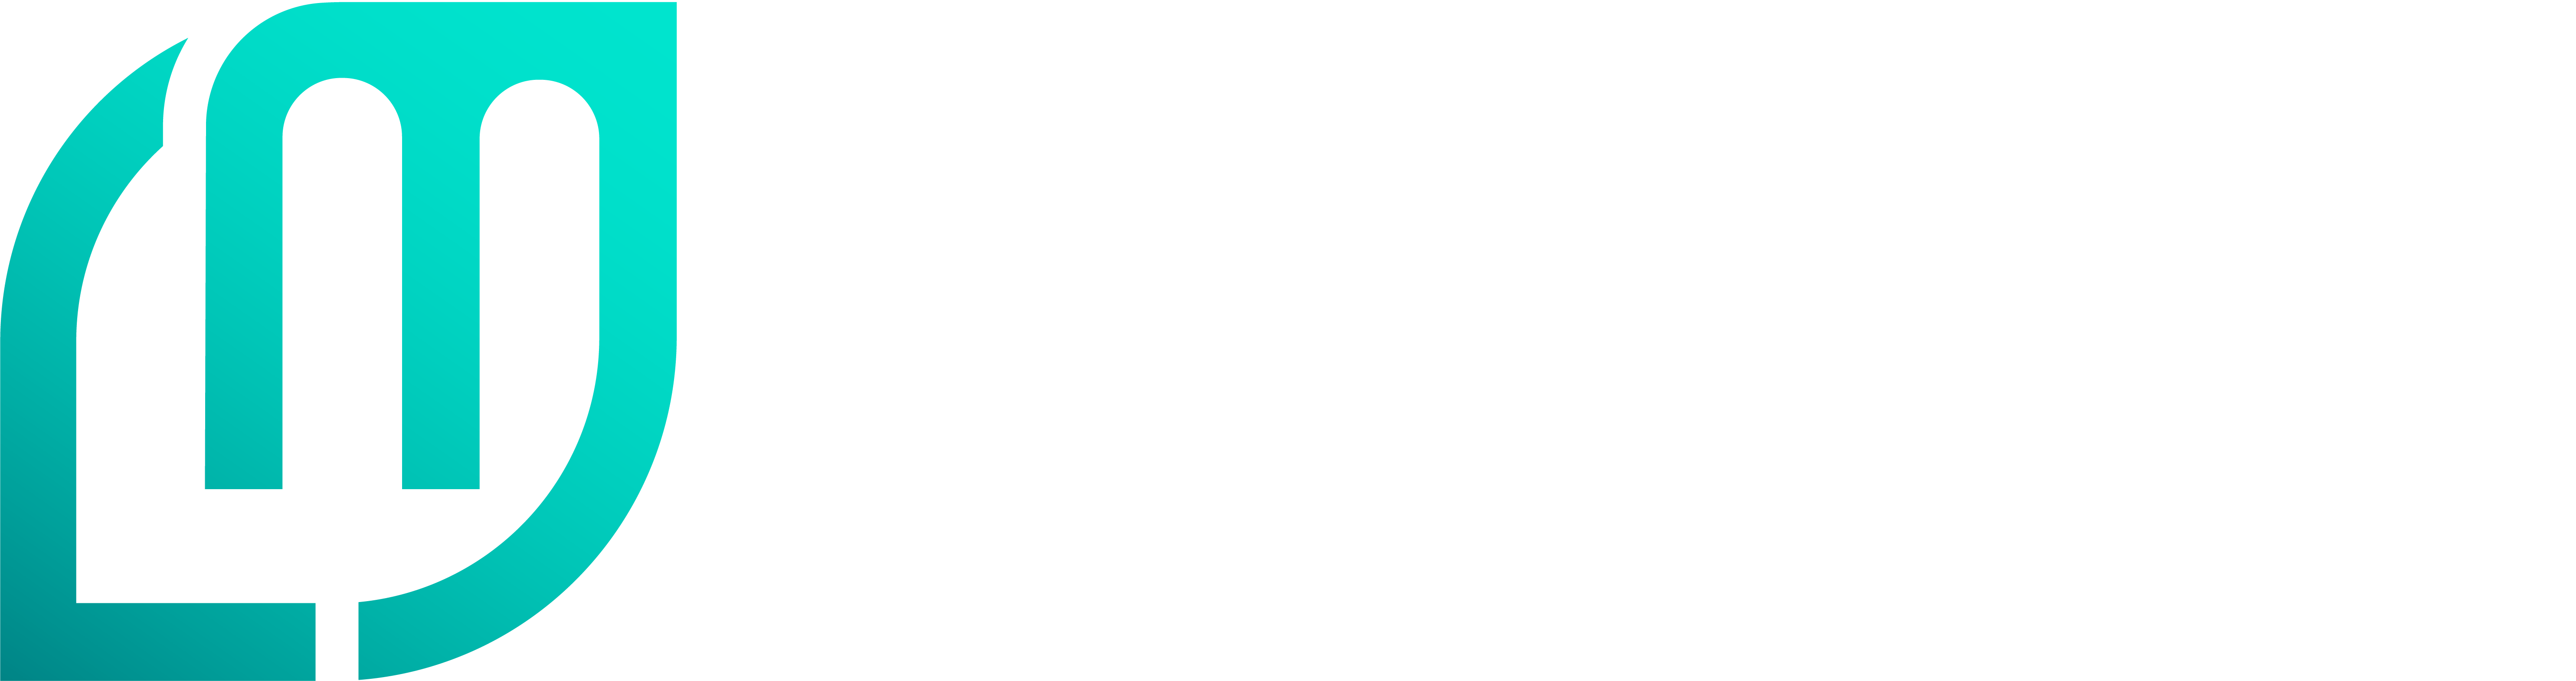 Lenders Mark